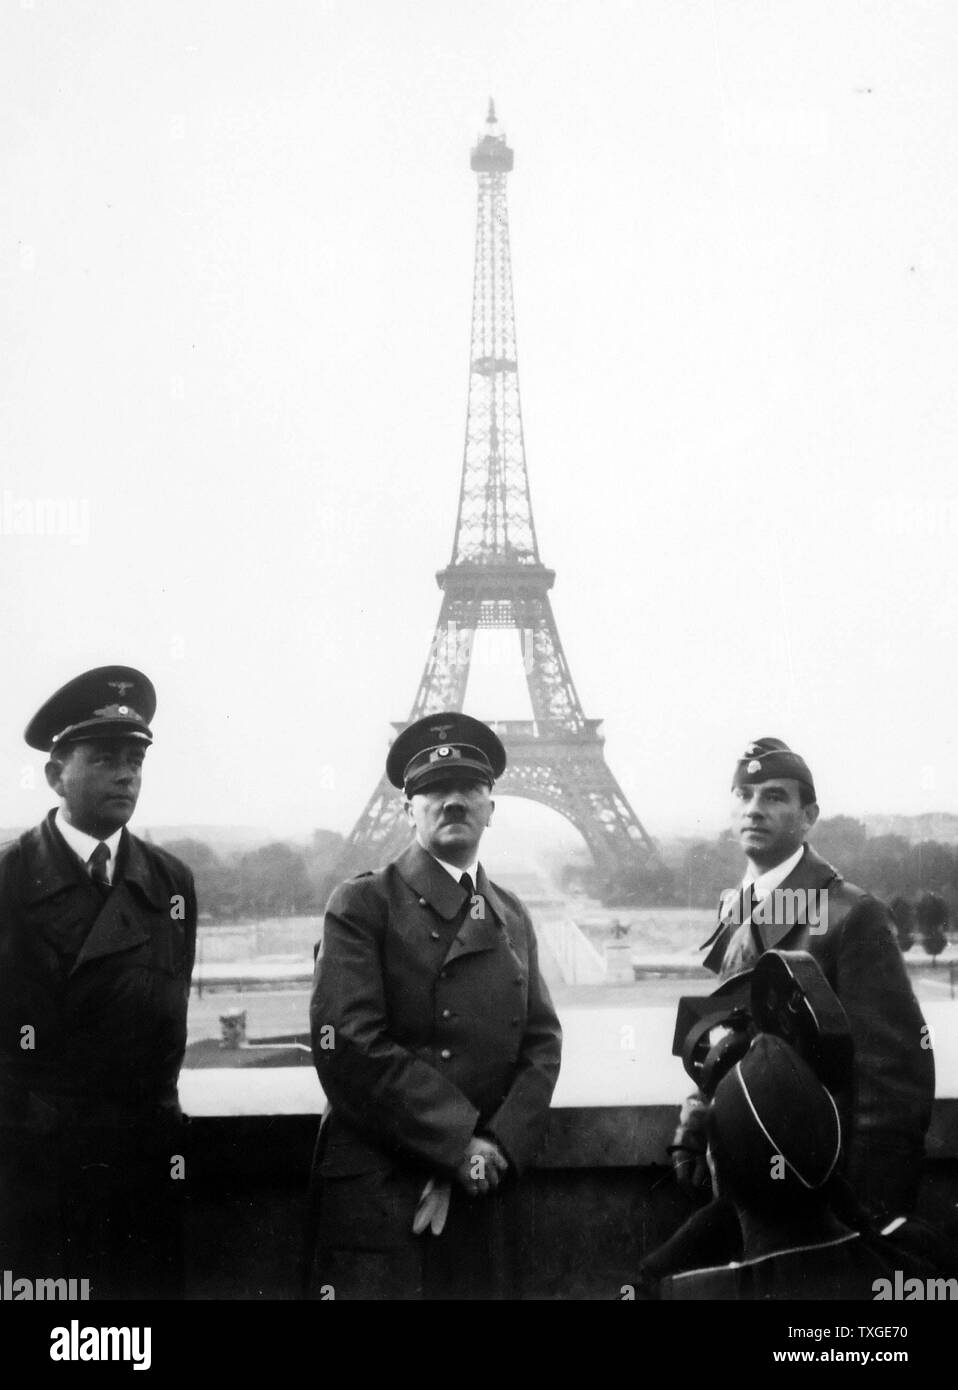 Photographie d'Adolf Hitler à Paris, avec la Tour Eiffel en arrière-plan. Datée 1940 Banque D'Images